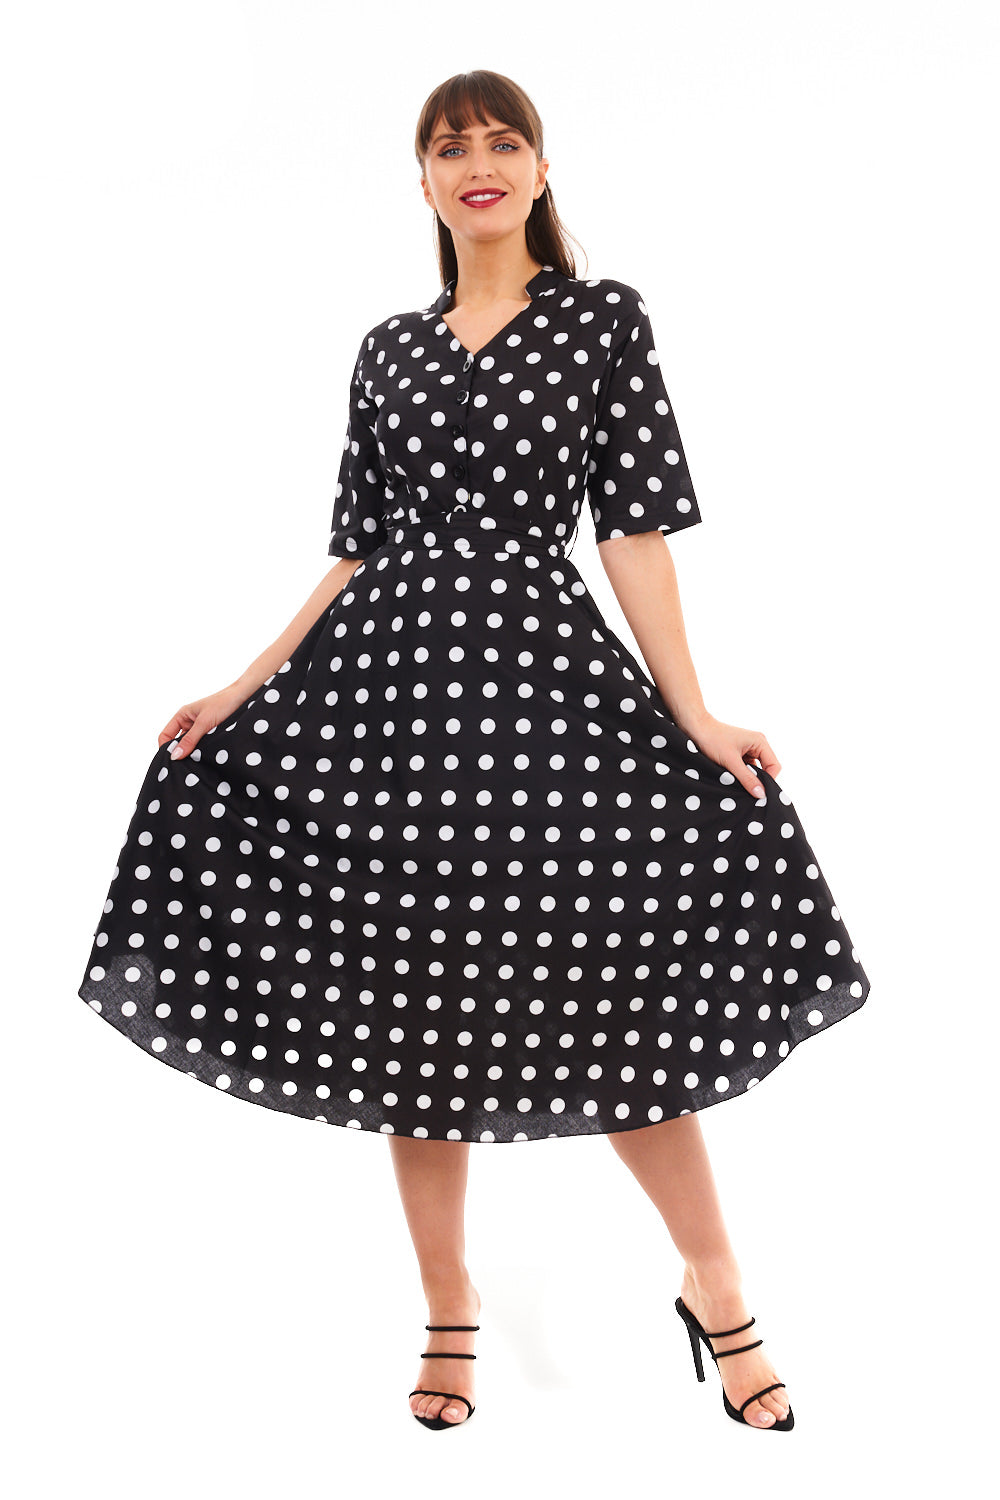 Retro Vintage 1940's Polka Dot Shirt Dress in Black